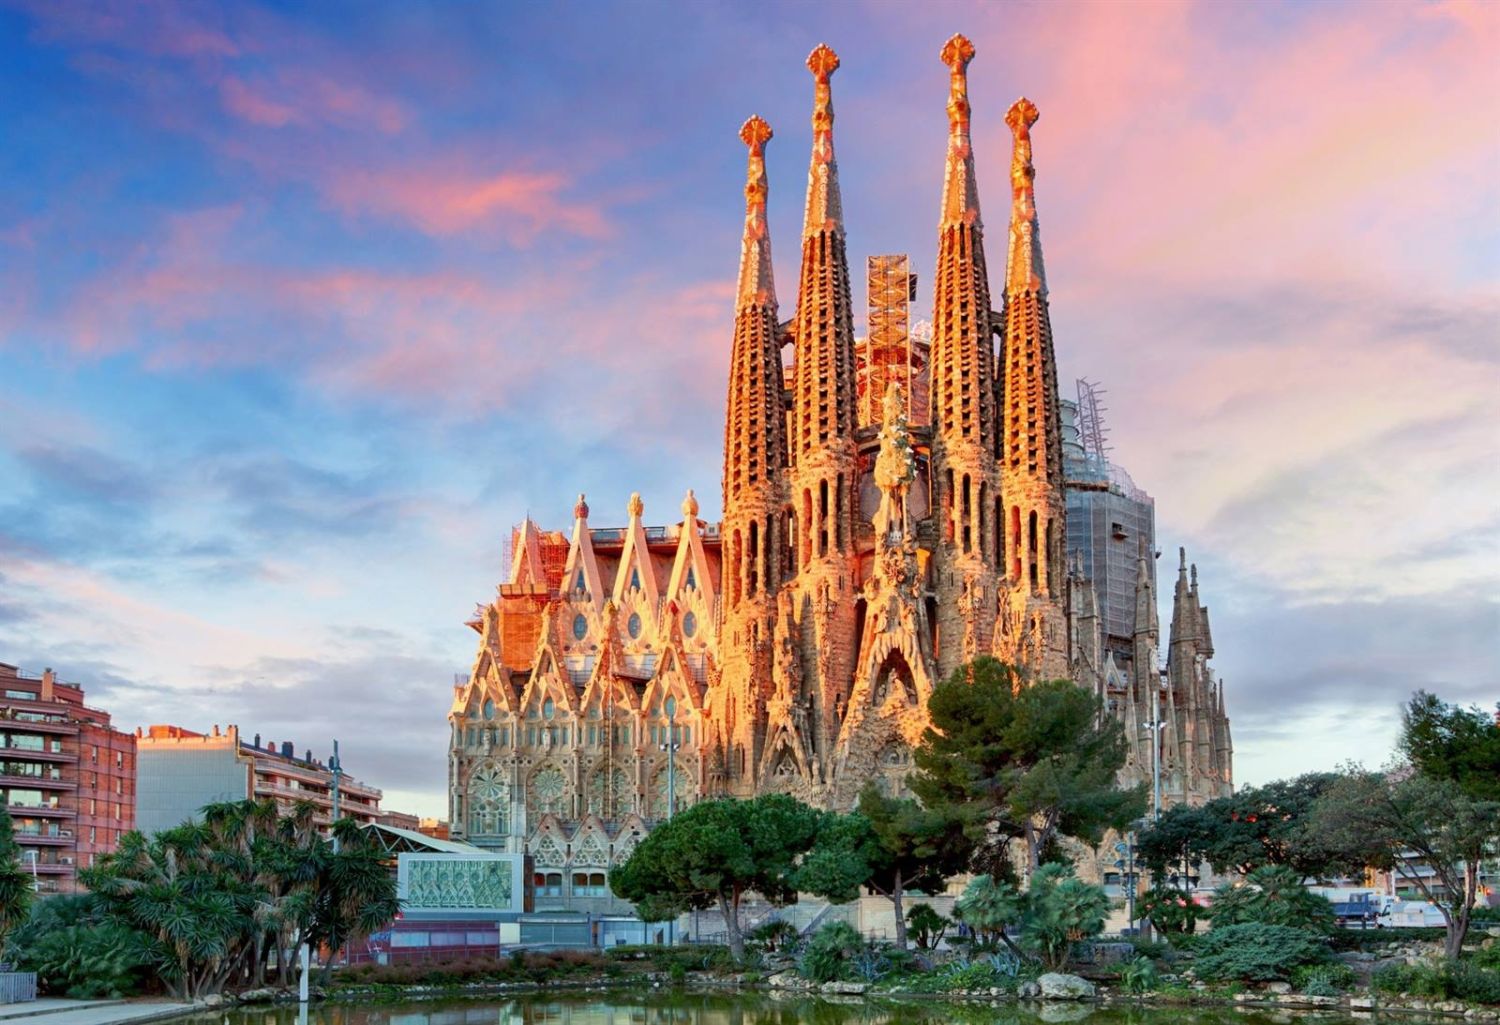 Experimenta la magia de la fachada de la Pasión de la Sagrada Familia de Antoni Gaudí